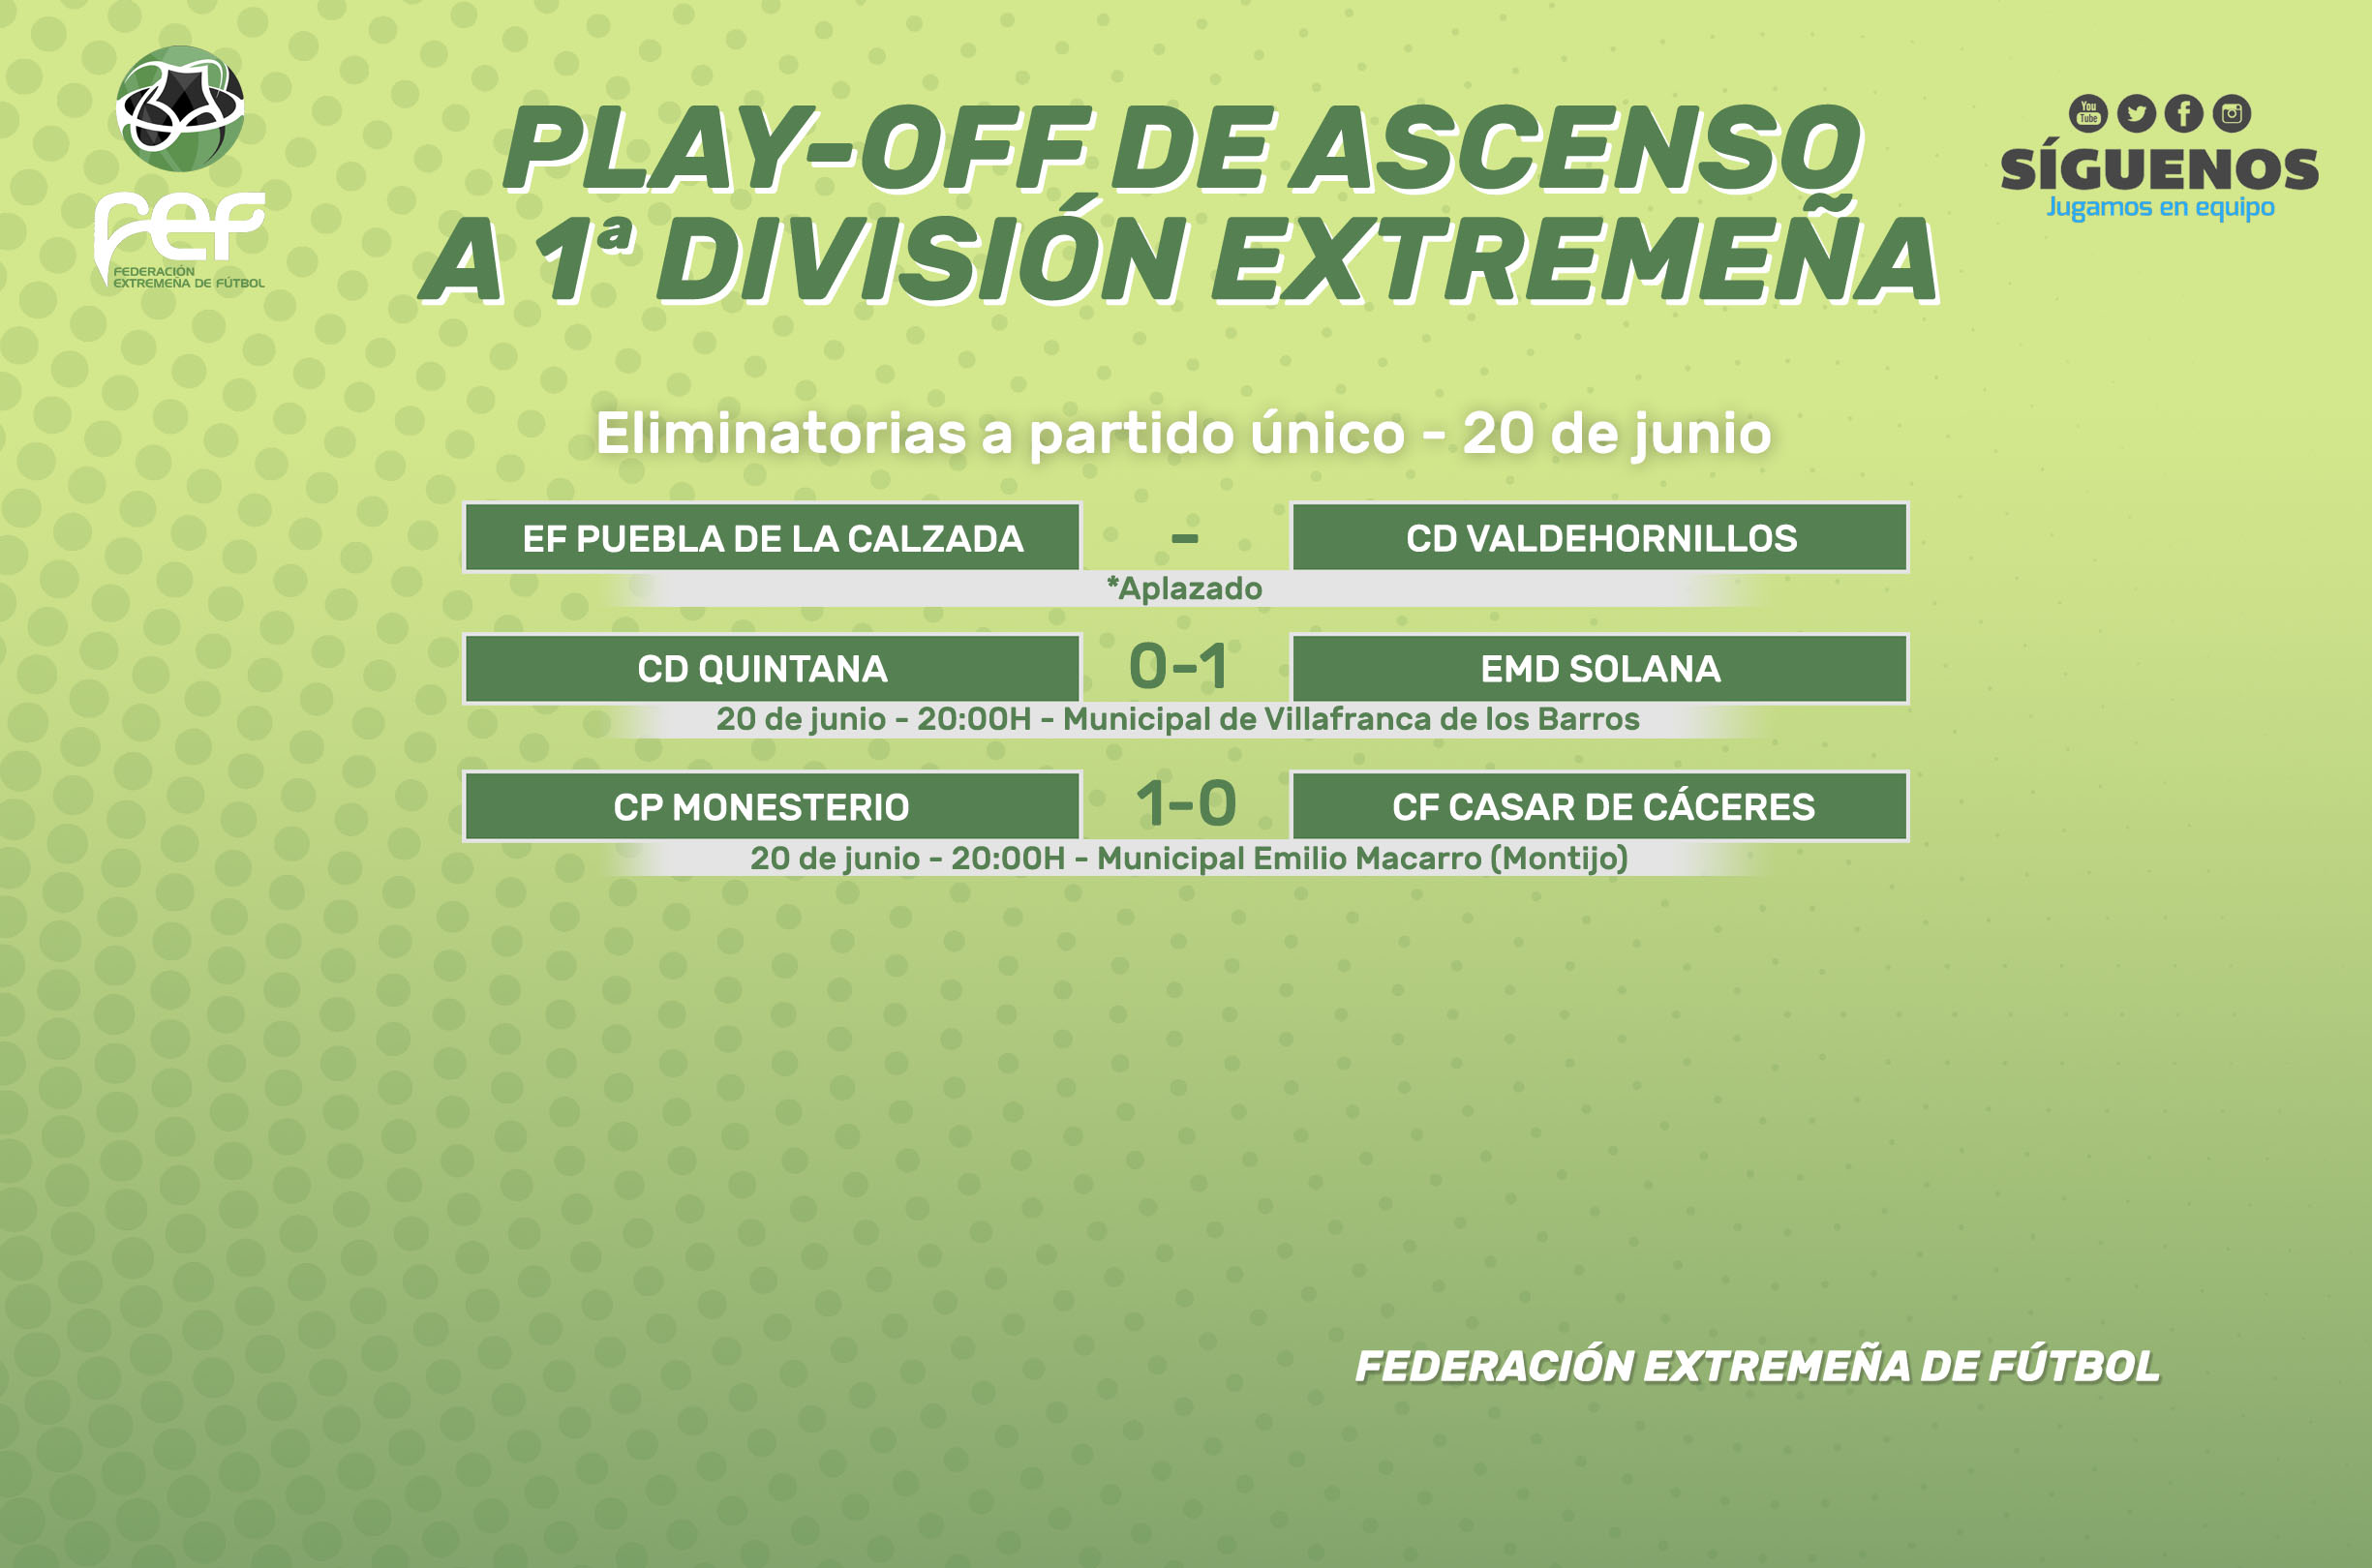 Fexfutbol on "📌Resultados al descanso los partidos de Fase de Ascenso Primera División Extremeña que están disputando hoy domingo #JugamosEnEquipo https://t.co/v4ERAq7DMt" / Twitter